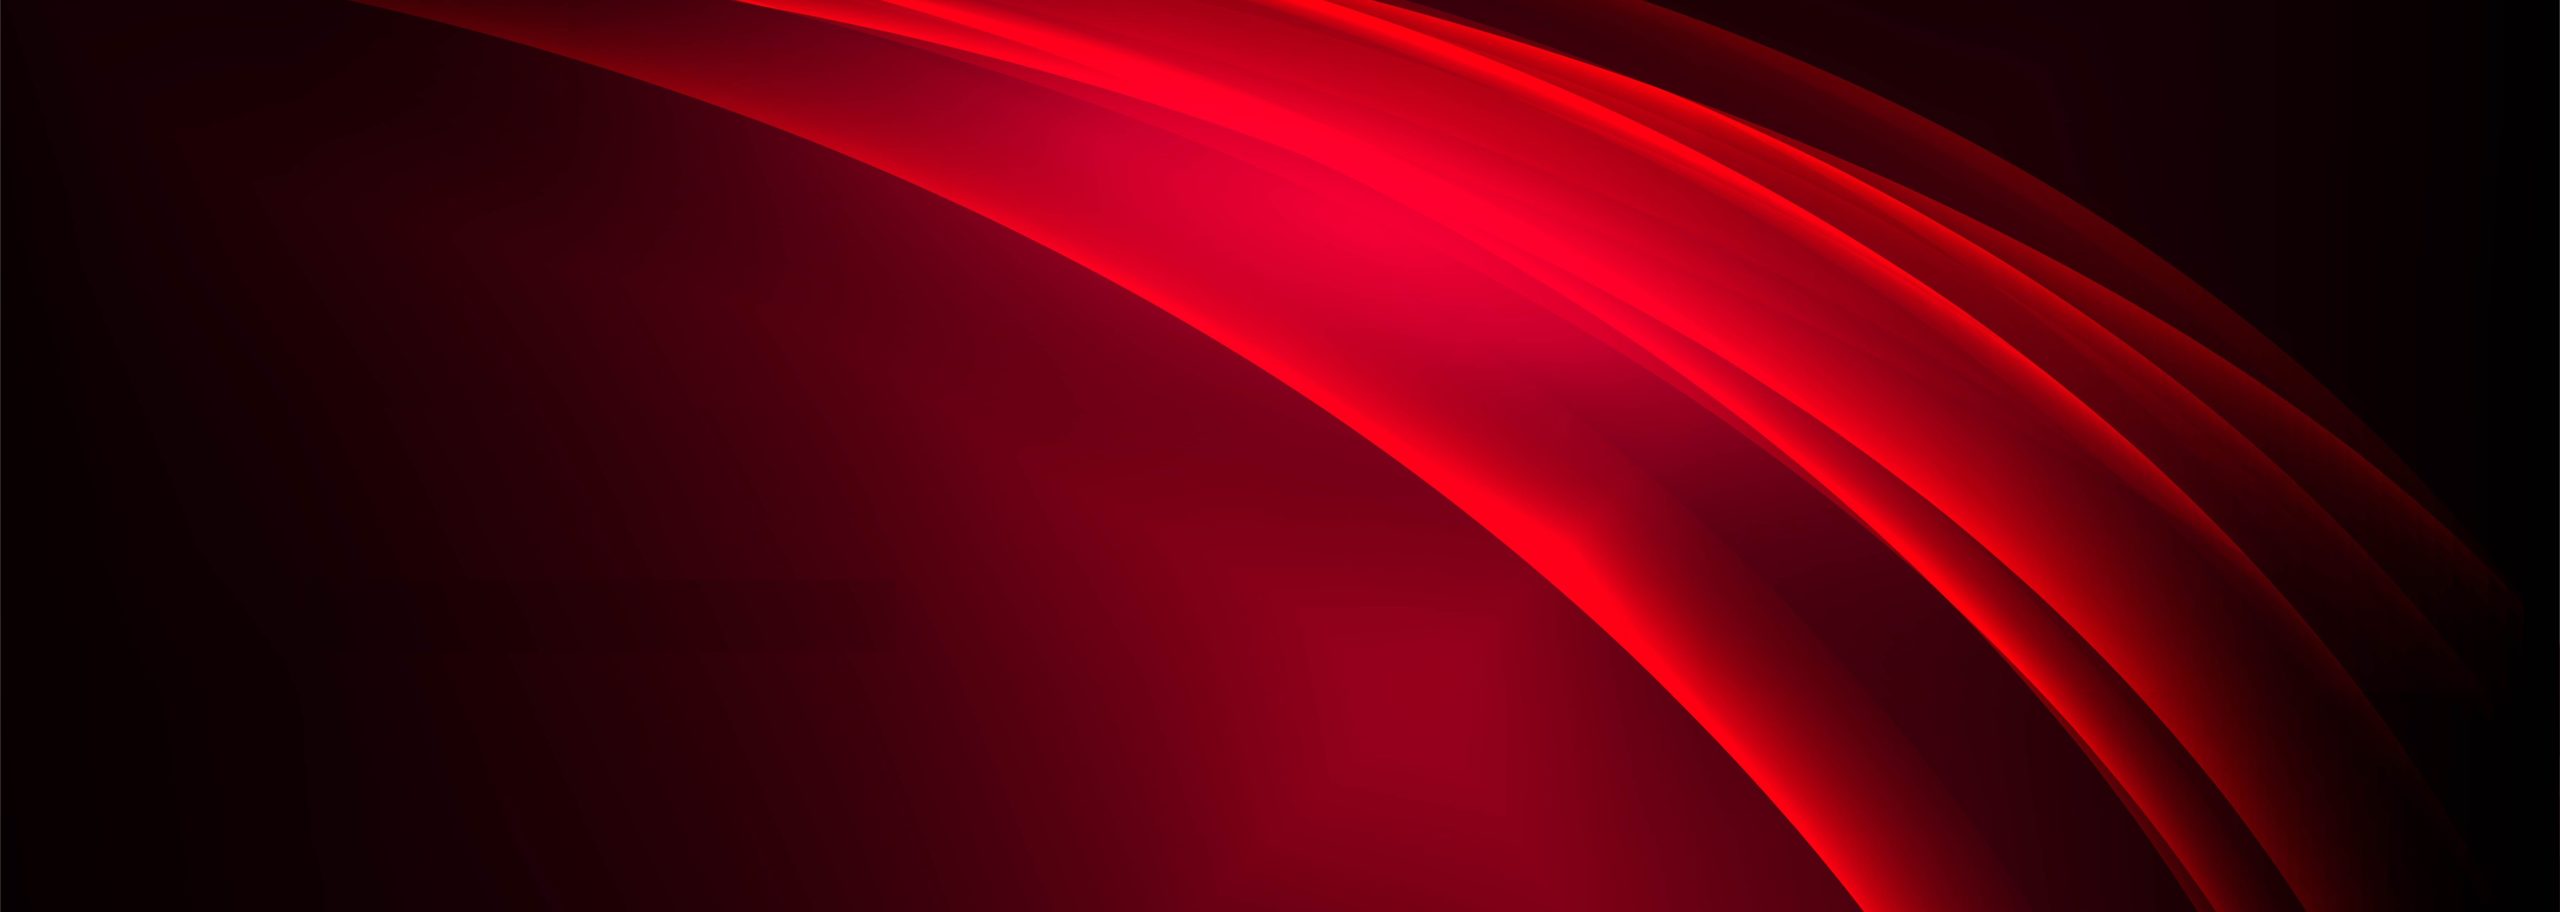 Abstrakcyjna stylizacja tapety w kolorz jaqsno czerwonym przechodzącym w czerń